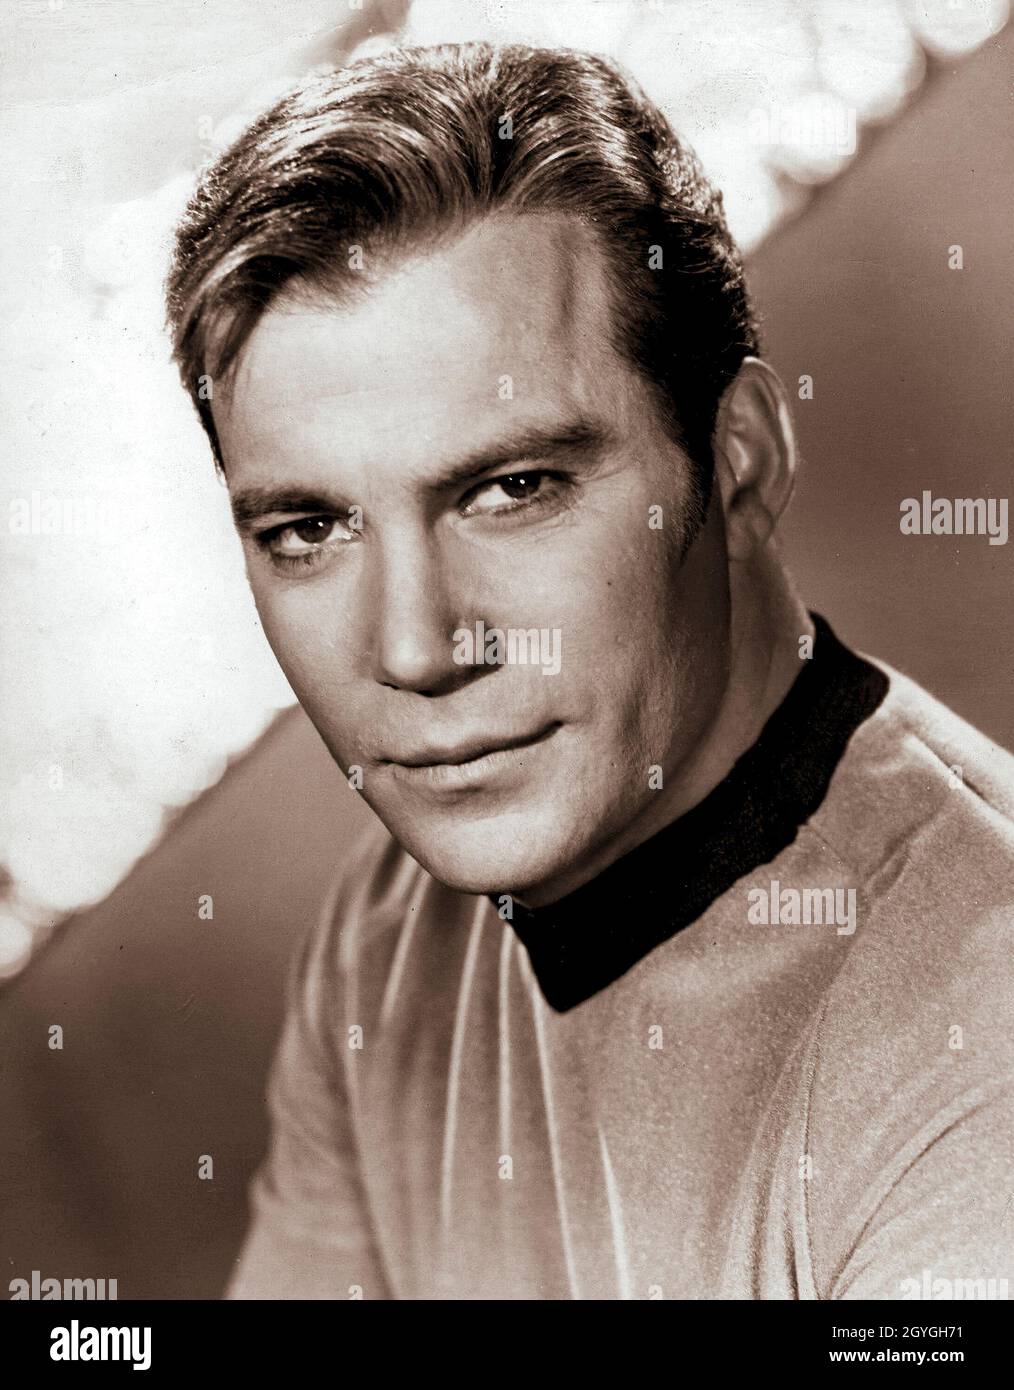 William Shatner en tant que capitaine Kirk de Star Trek.William Shatner OC (né le 22 mars 1931) est un acteur, auteur, producteur, réalisateur, scénariste canadien,et chanteur.Au cours de ses sept décennies d'action, il est devenu une icône culturelle pour sa représentation du capitaine James T. Kirk de l'USS Enterprise dans la franchise Star Trek.Il a écrit une série de livres retraçant ses expériences de jeu de capitaine Kirk, faisant partie de Star Trek, et la vie après Star Trek. Banque D'Images